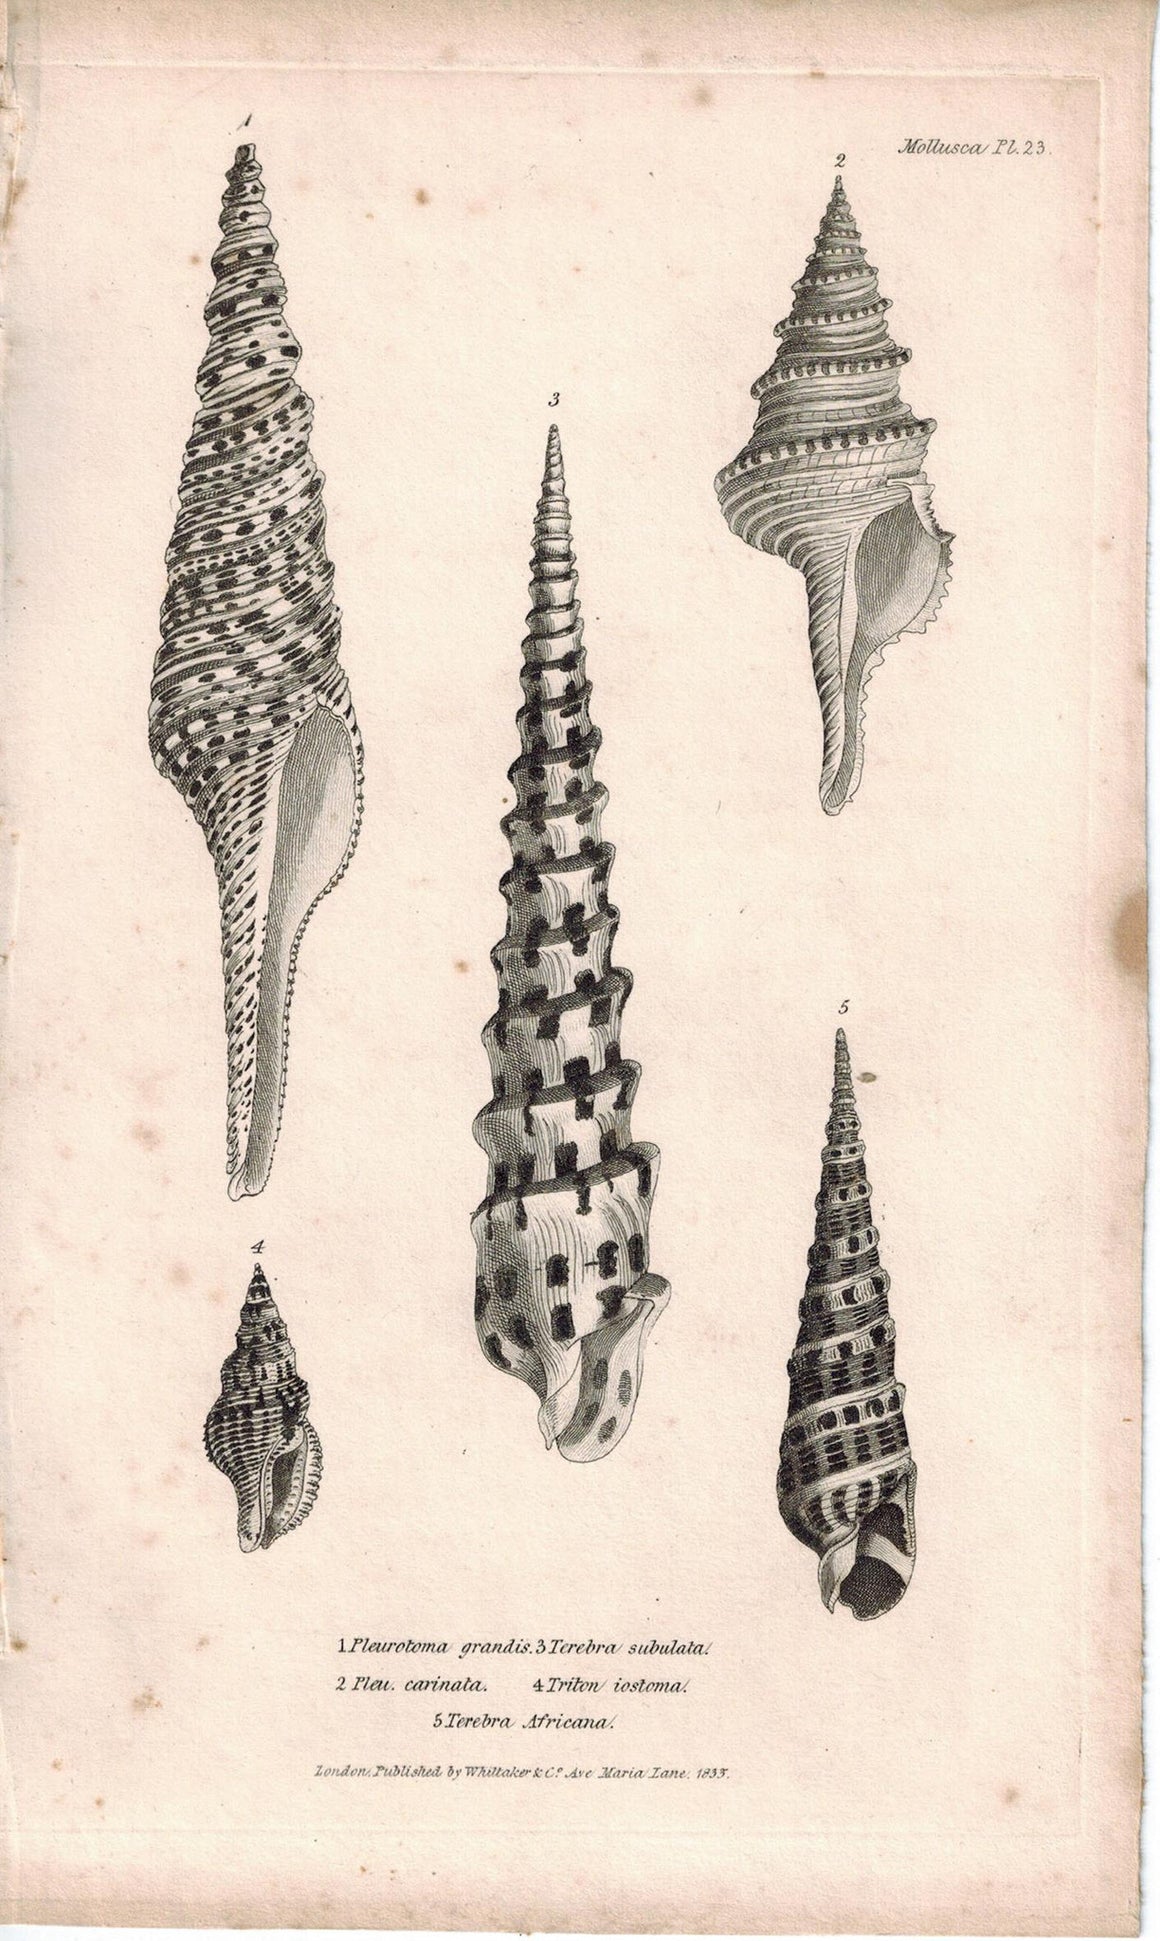 Sea Shell Mollusca Antique cuvier Print 1834 Pl 23